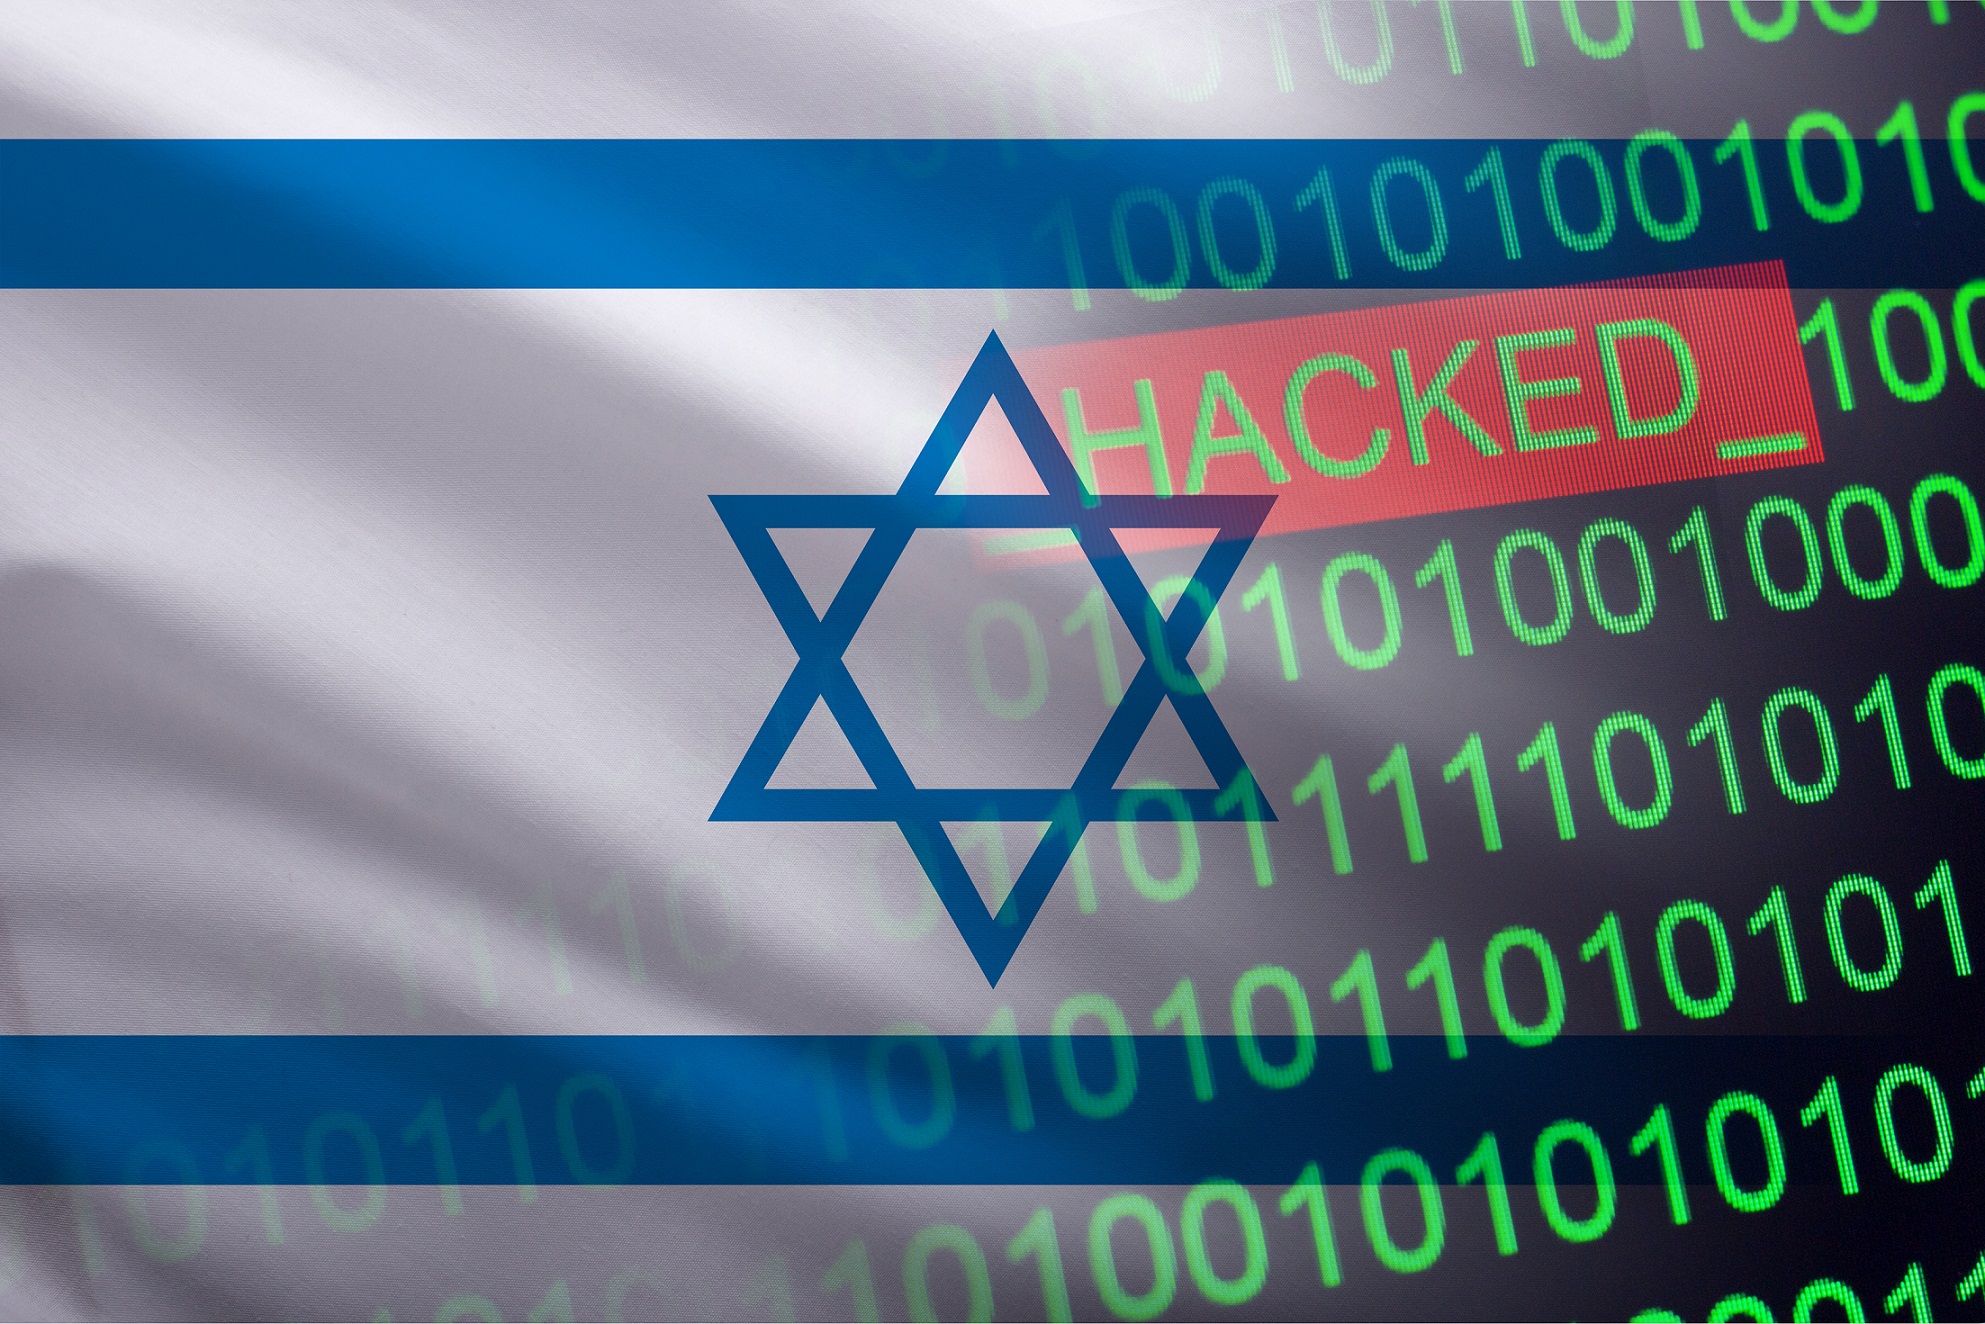 takian.ir gaza linked cyber threat actor targets israel